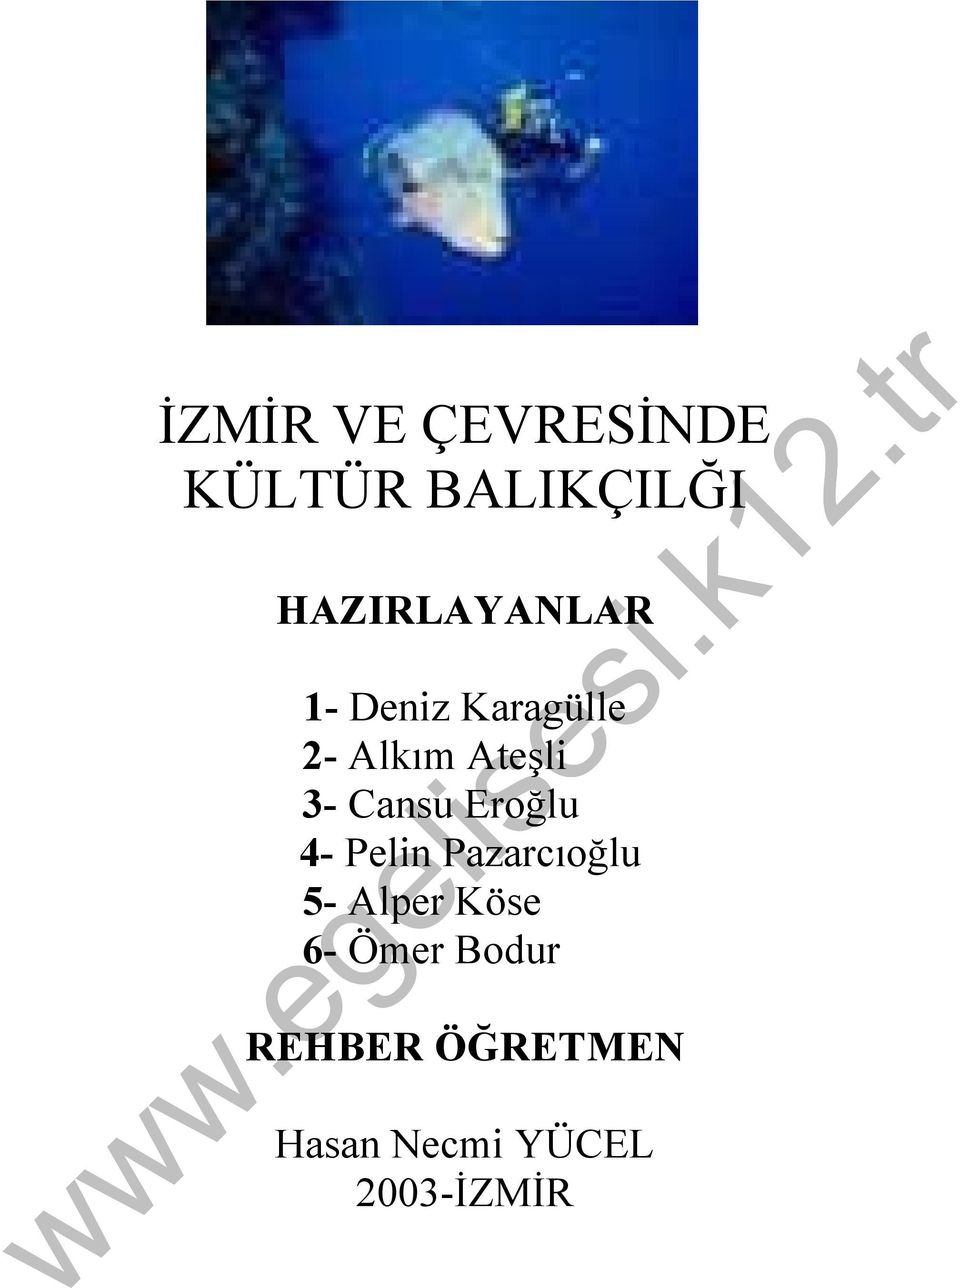 3- Cansu Eroğlu 4- Pelin Pazarcıoğlu 5- Alper